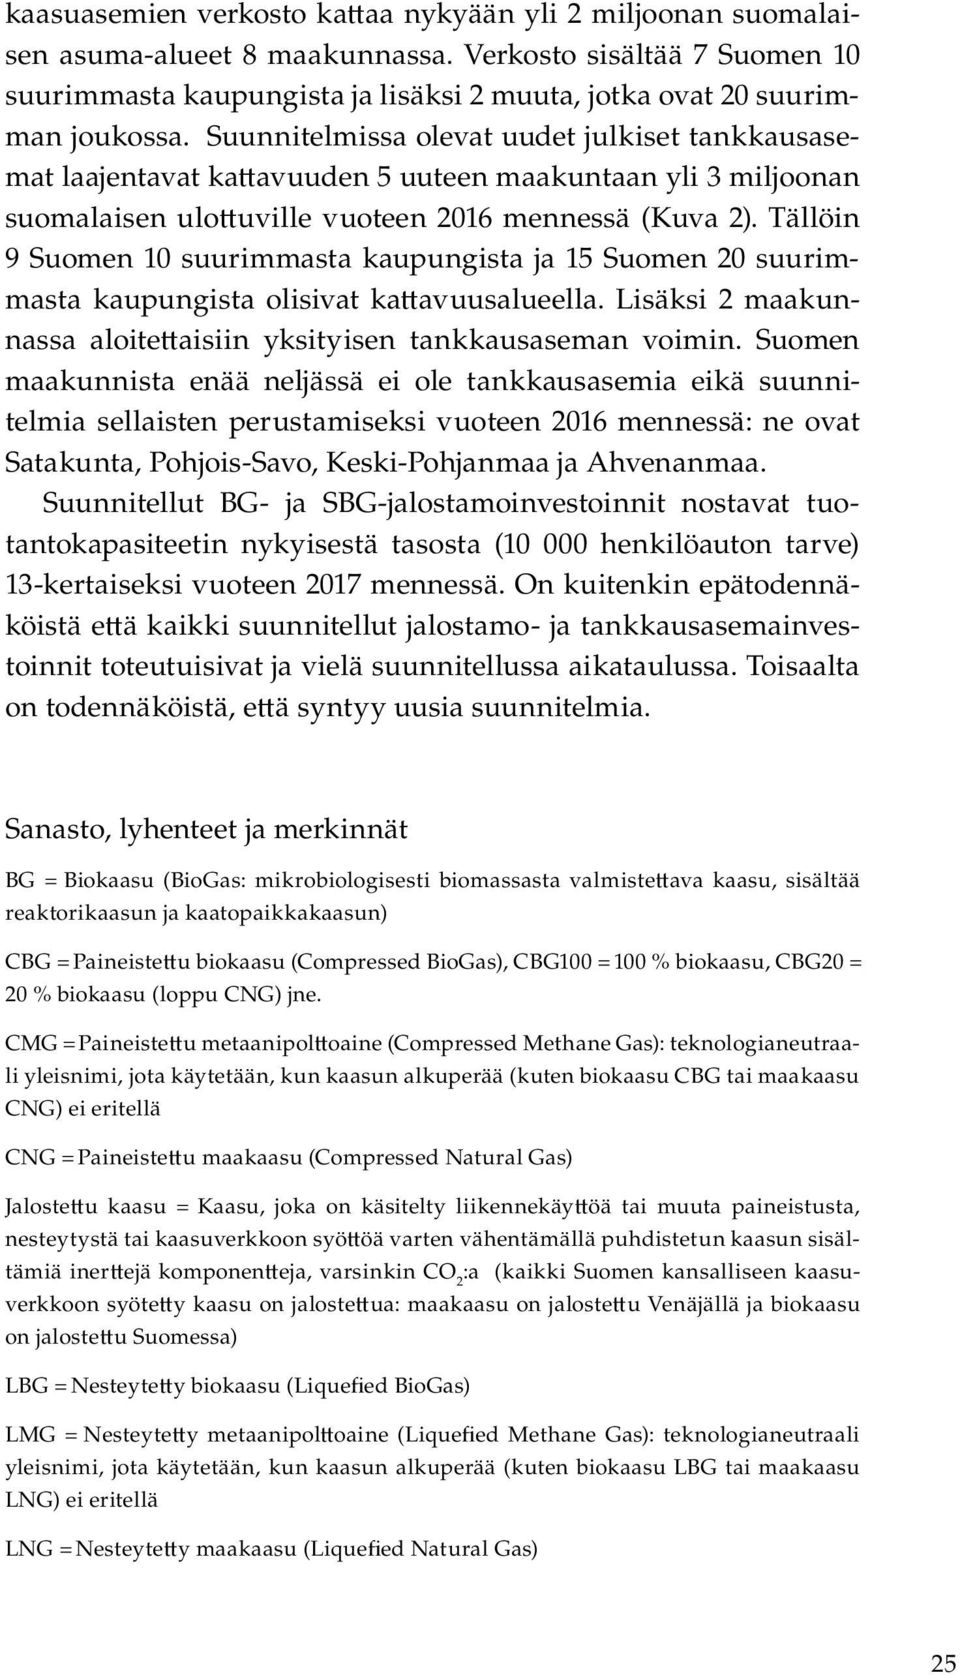 Tällöin 9 Suomen 10 suurimmasta kaupungista ja 15 Suomen 20 suurimmasta kaupungista olisivat ka avuusalueella. Lisäksi 2 maakunnassa aloite aisiin yksityisen tankkausaseman voimin.